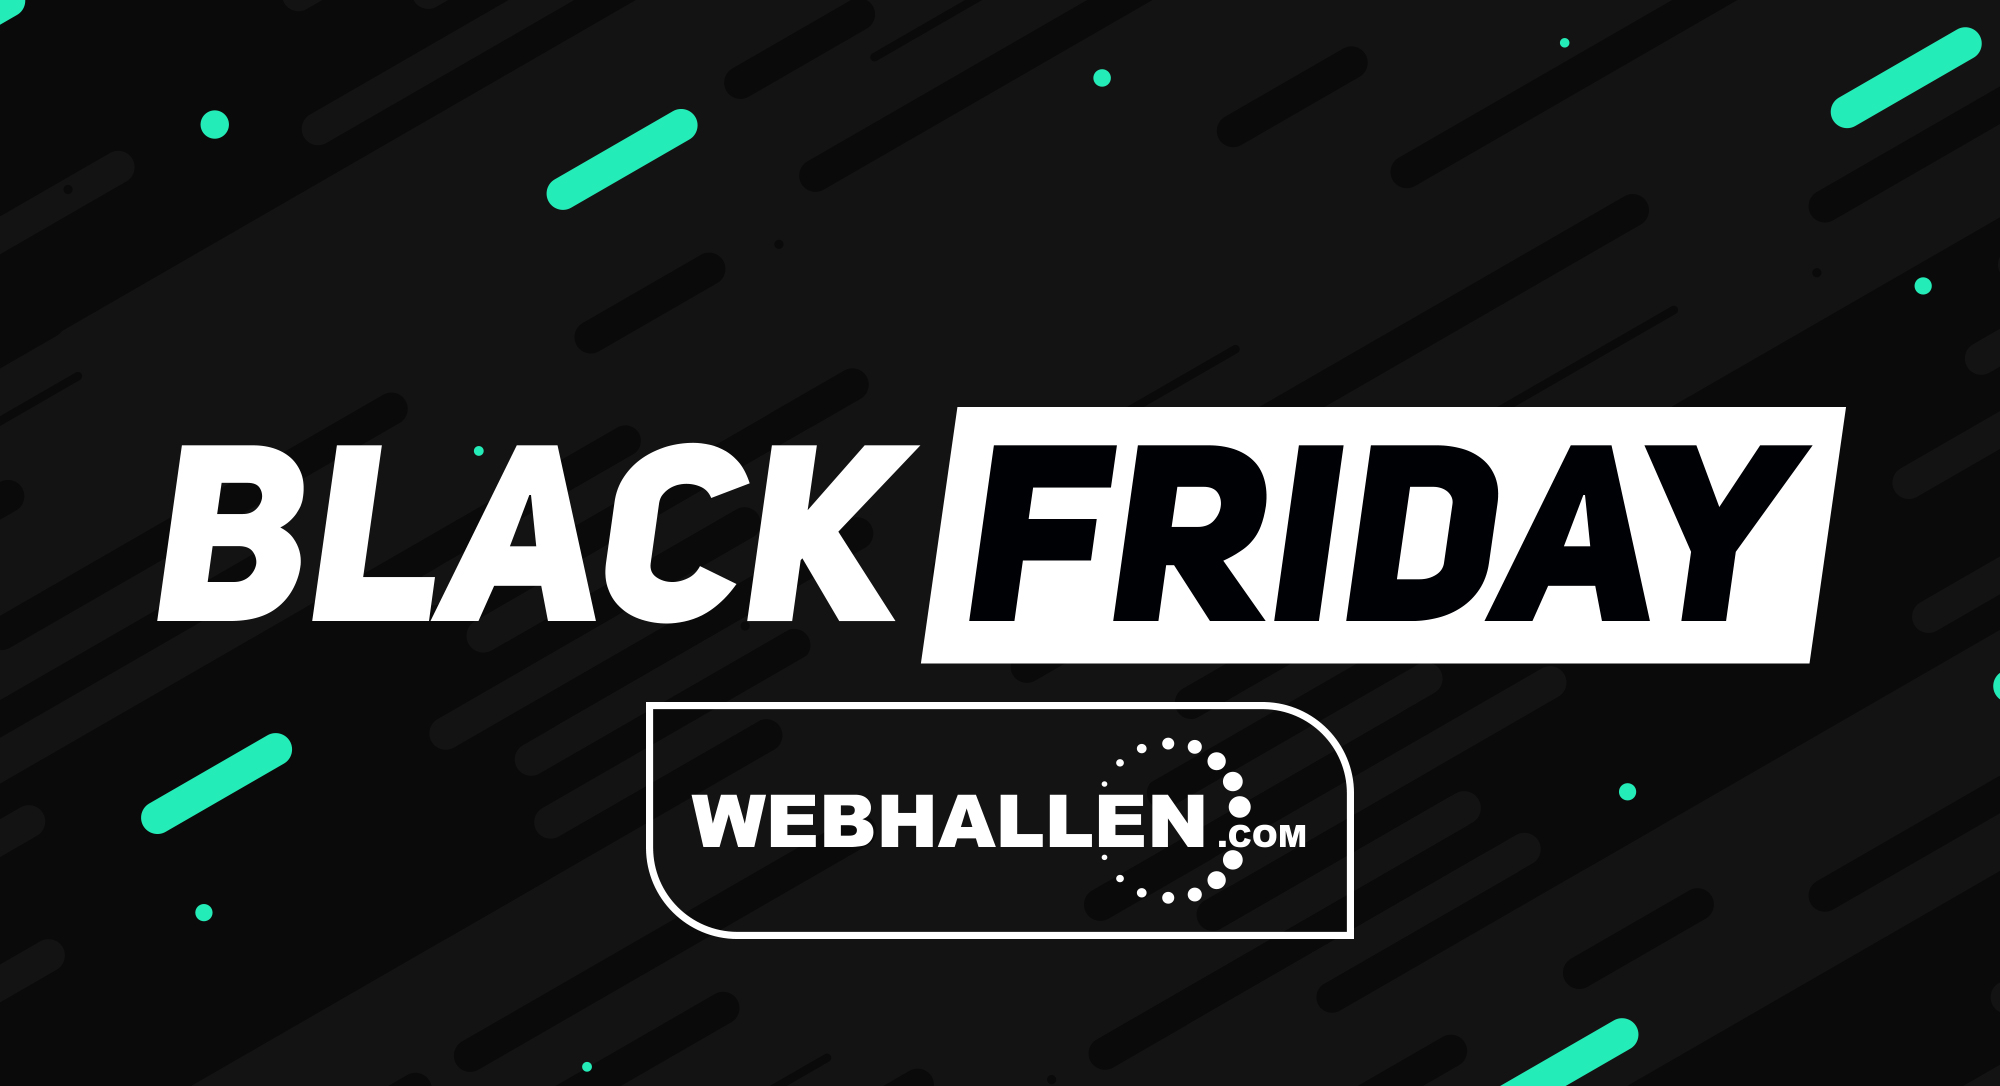 Black Friday Webhallen